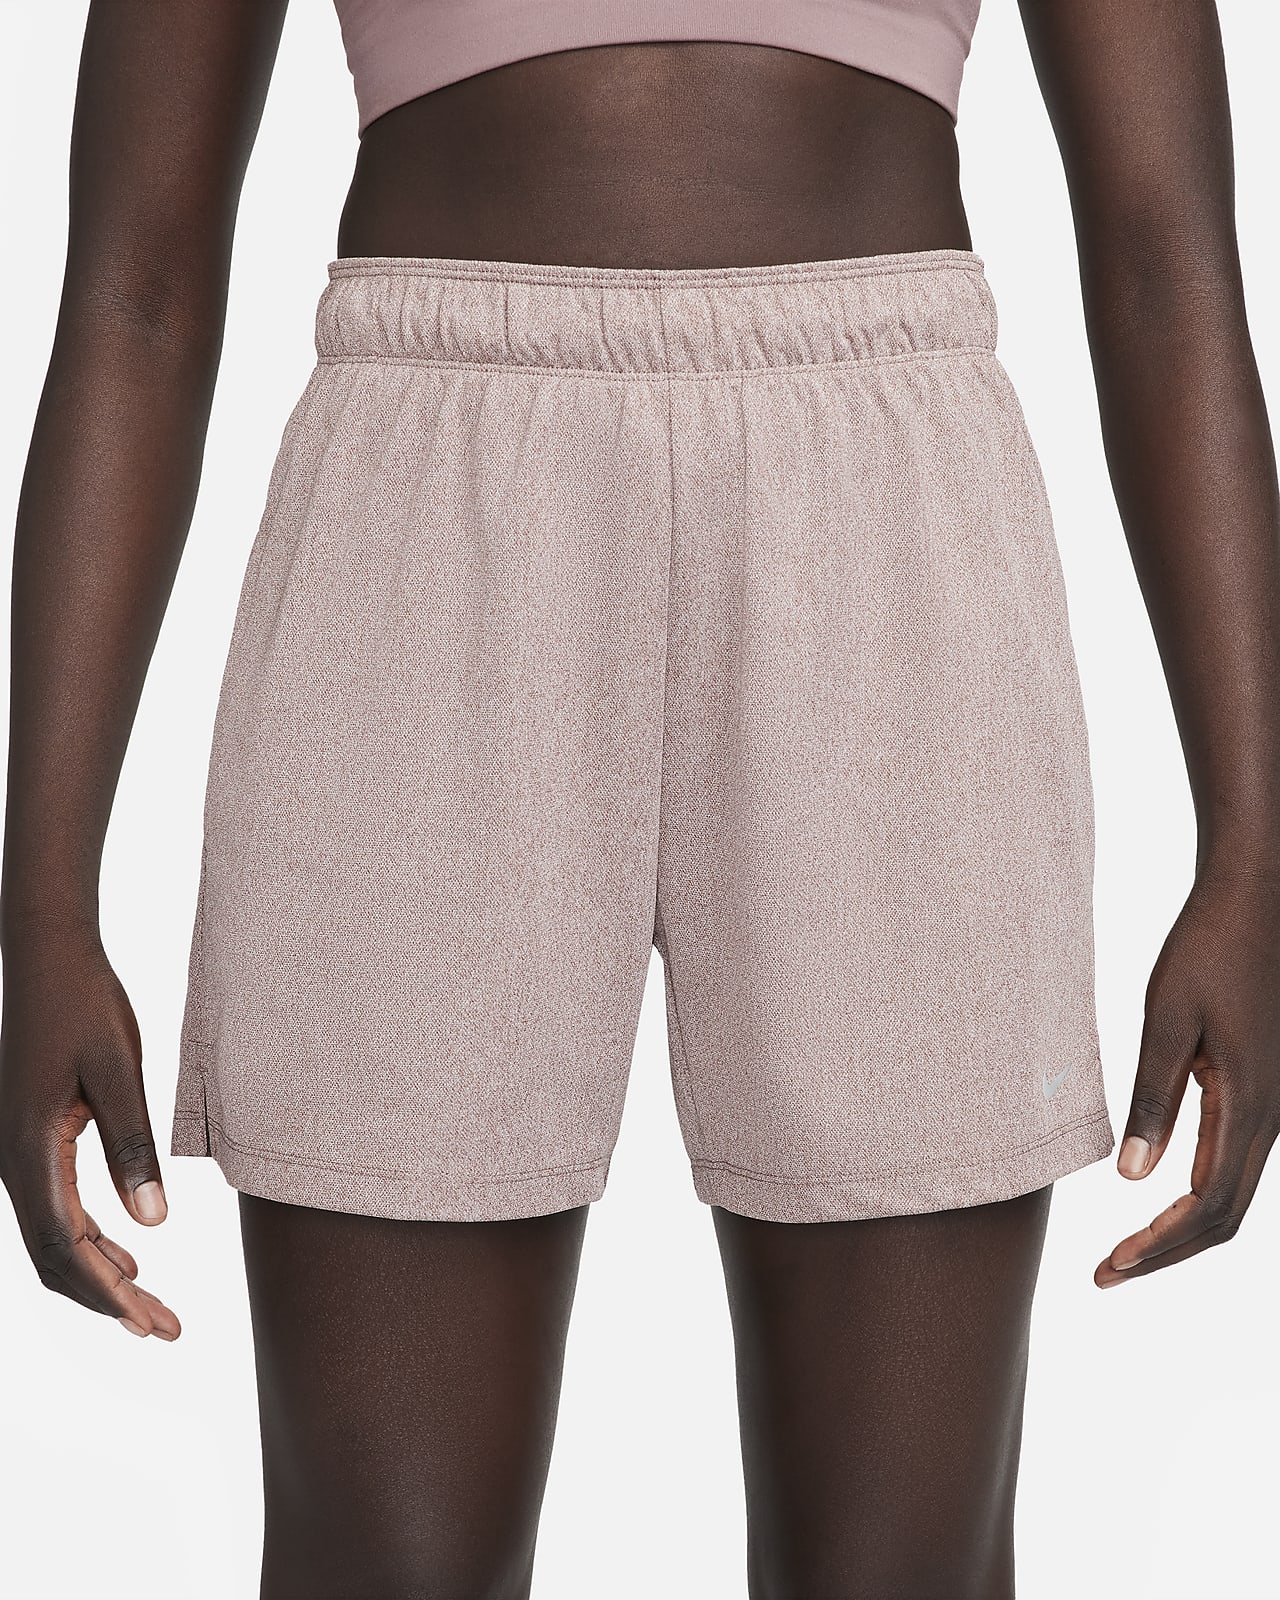 Women's Gym Shorts. Training & Workout Shorts. Nike NL